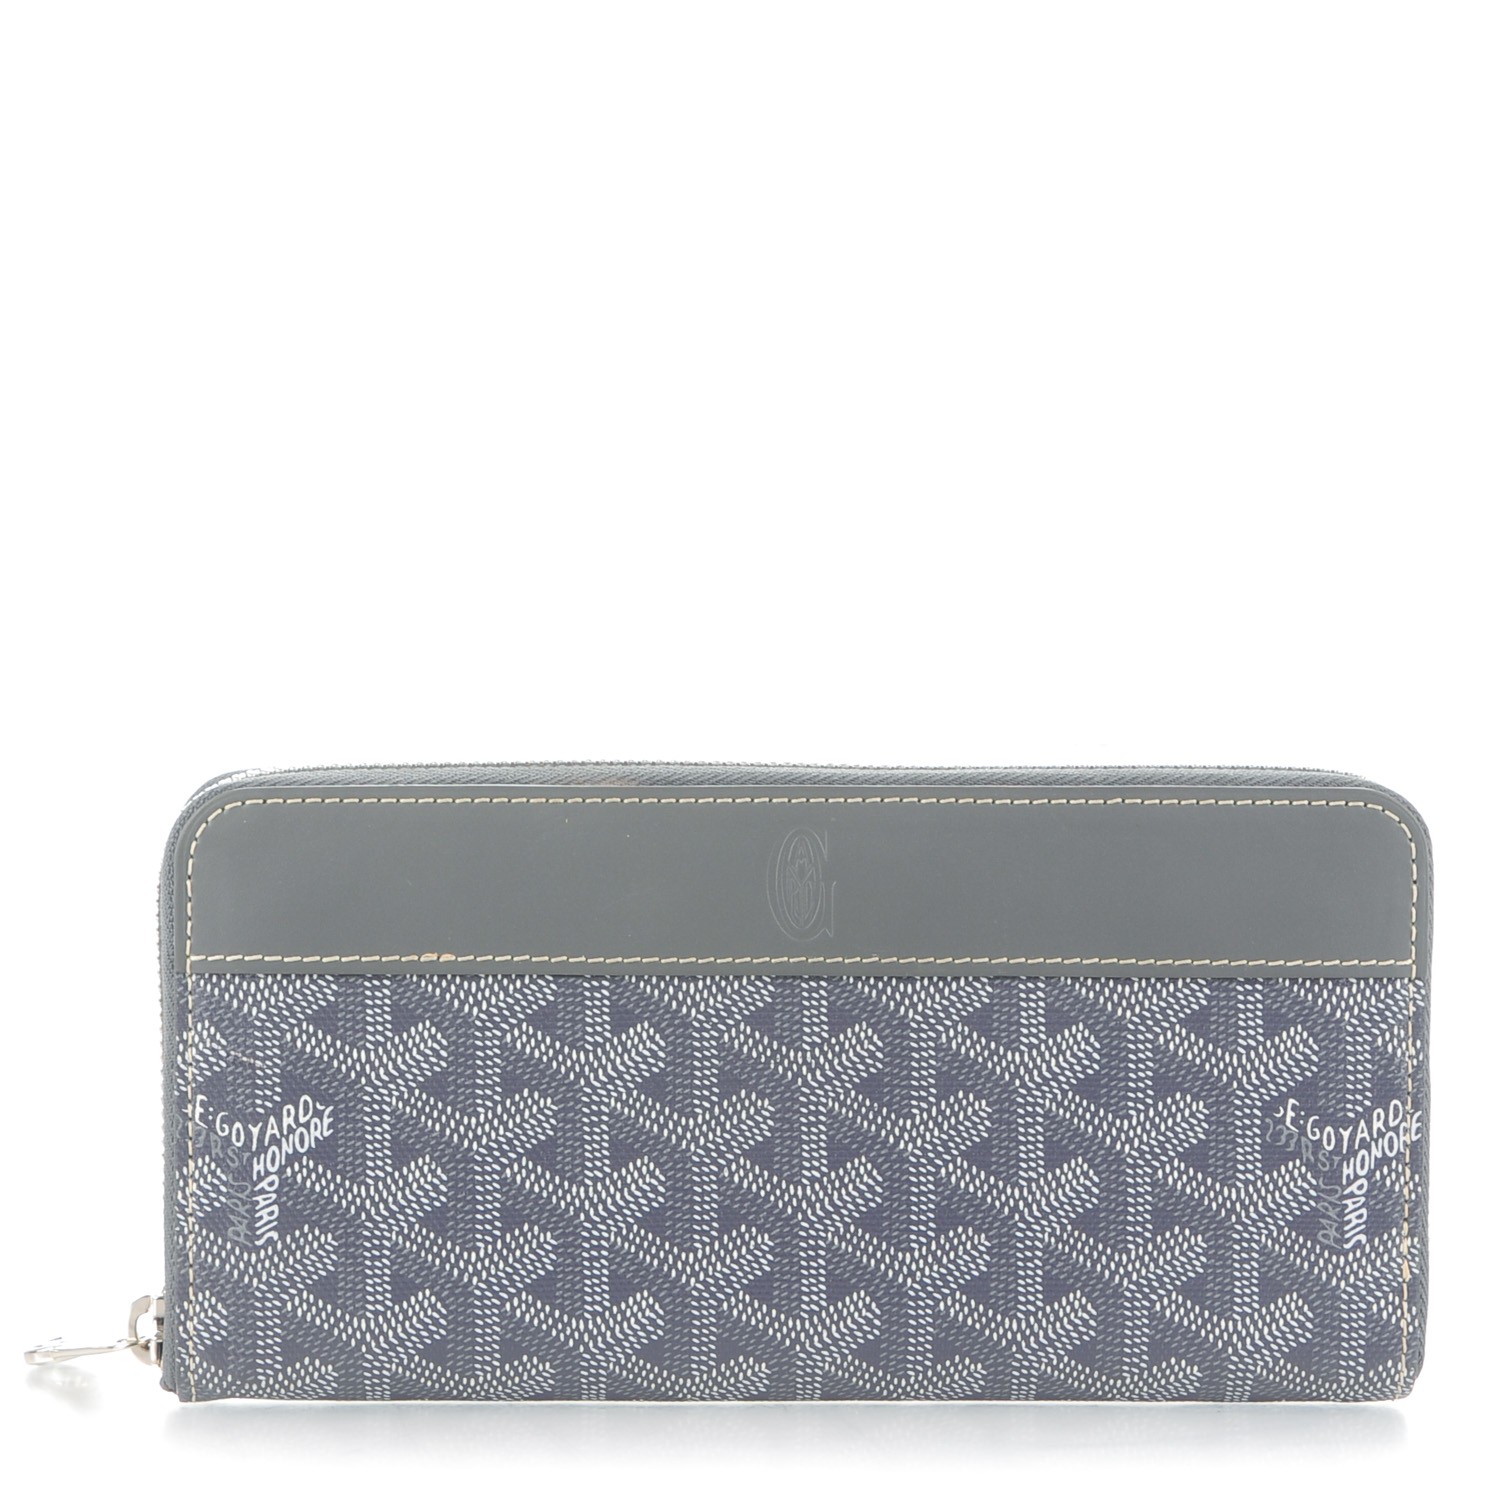 GOYARD Goyardine Matignon Zip Around GM Wallet Grey 160538 | FASHIONPHILE